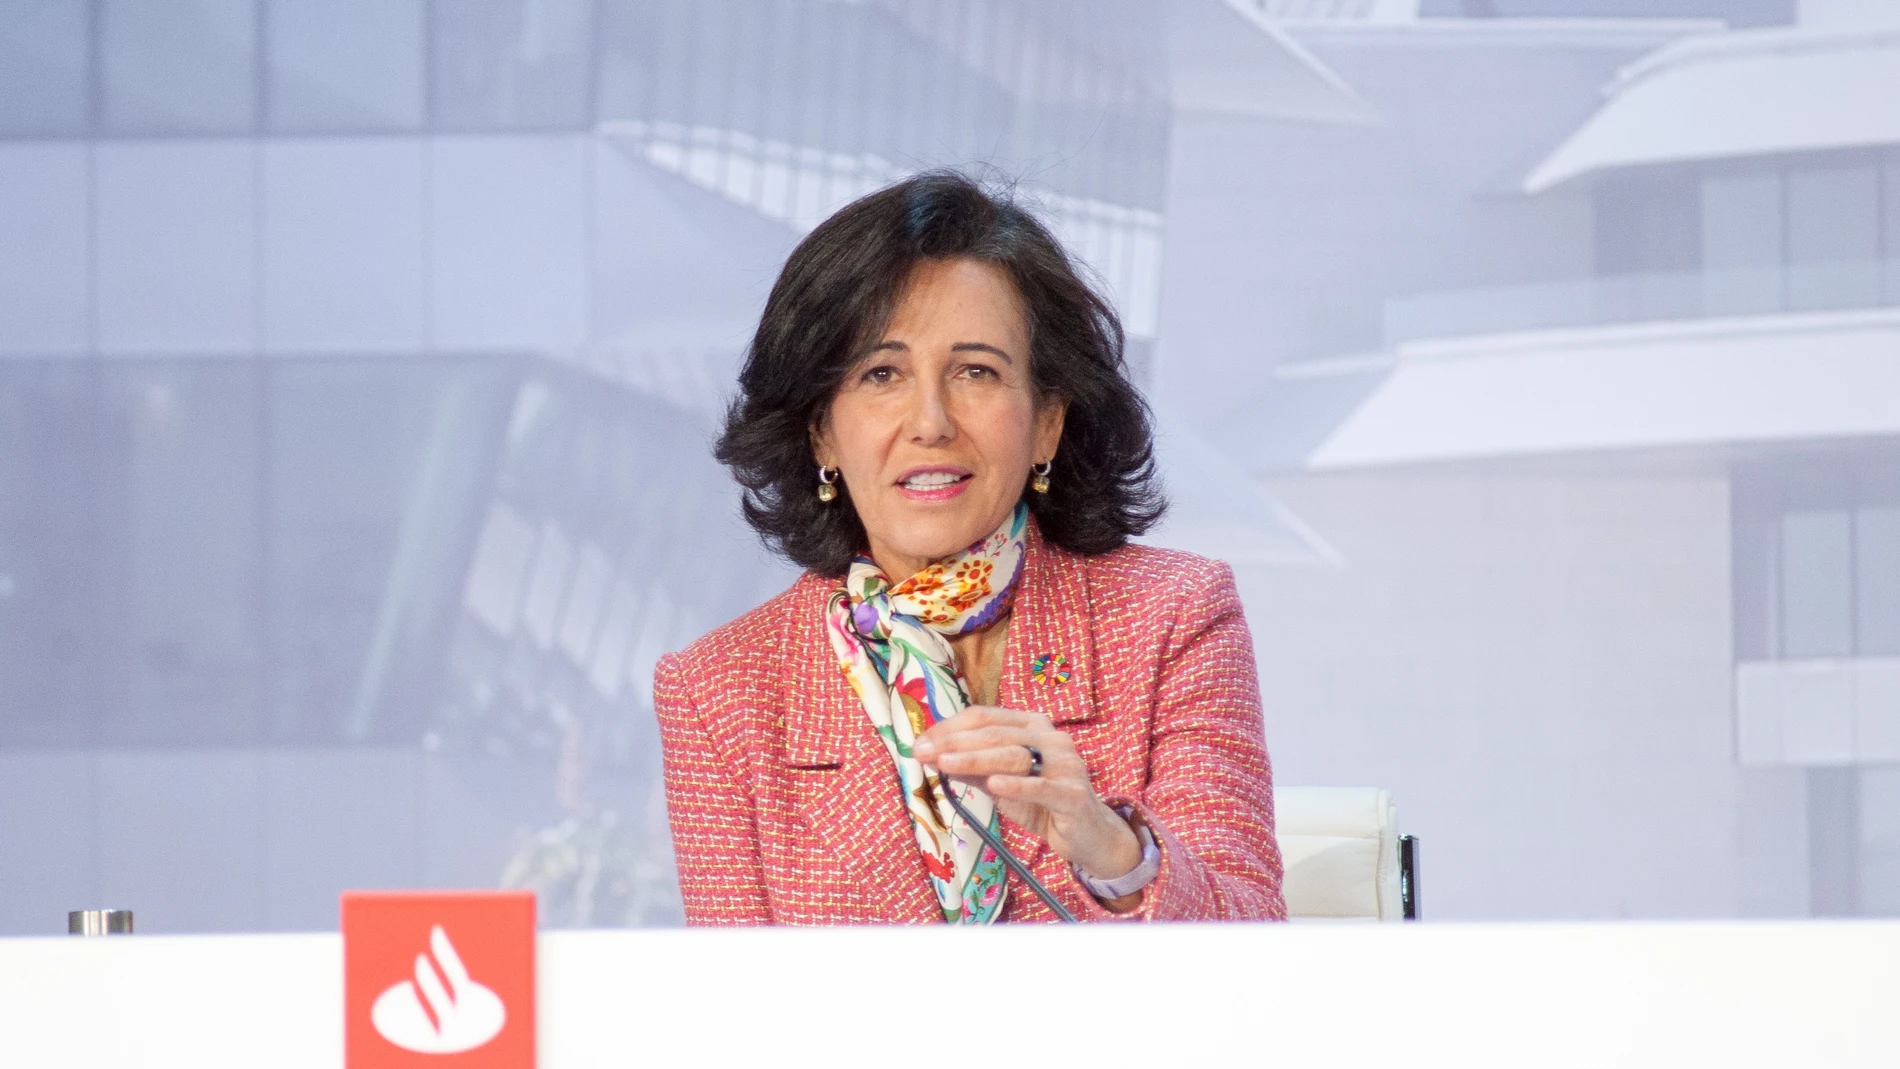 La presidenta de Banco Santander, Ana Botín, durante la junta general de accionistas de 2021 celebrada hoy